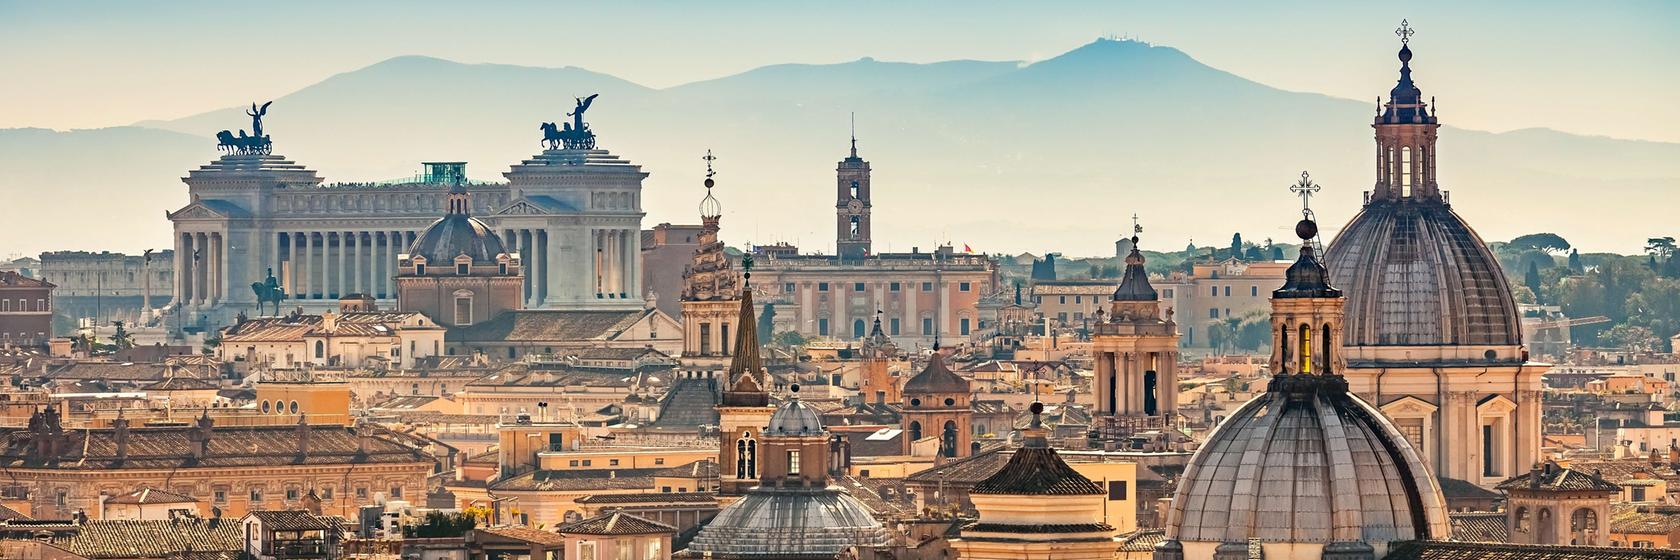 Počasí a kdy jet  do Říma a okolí